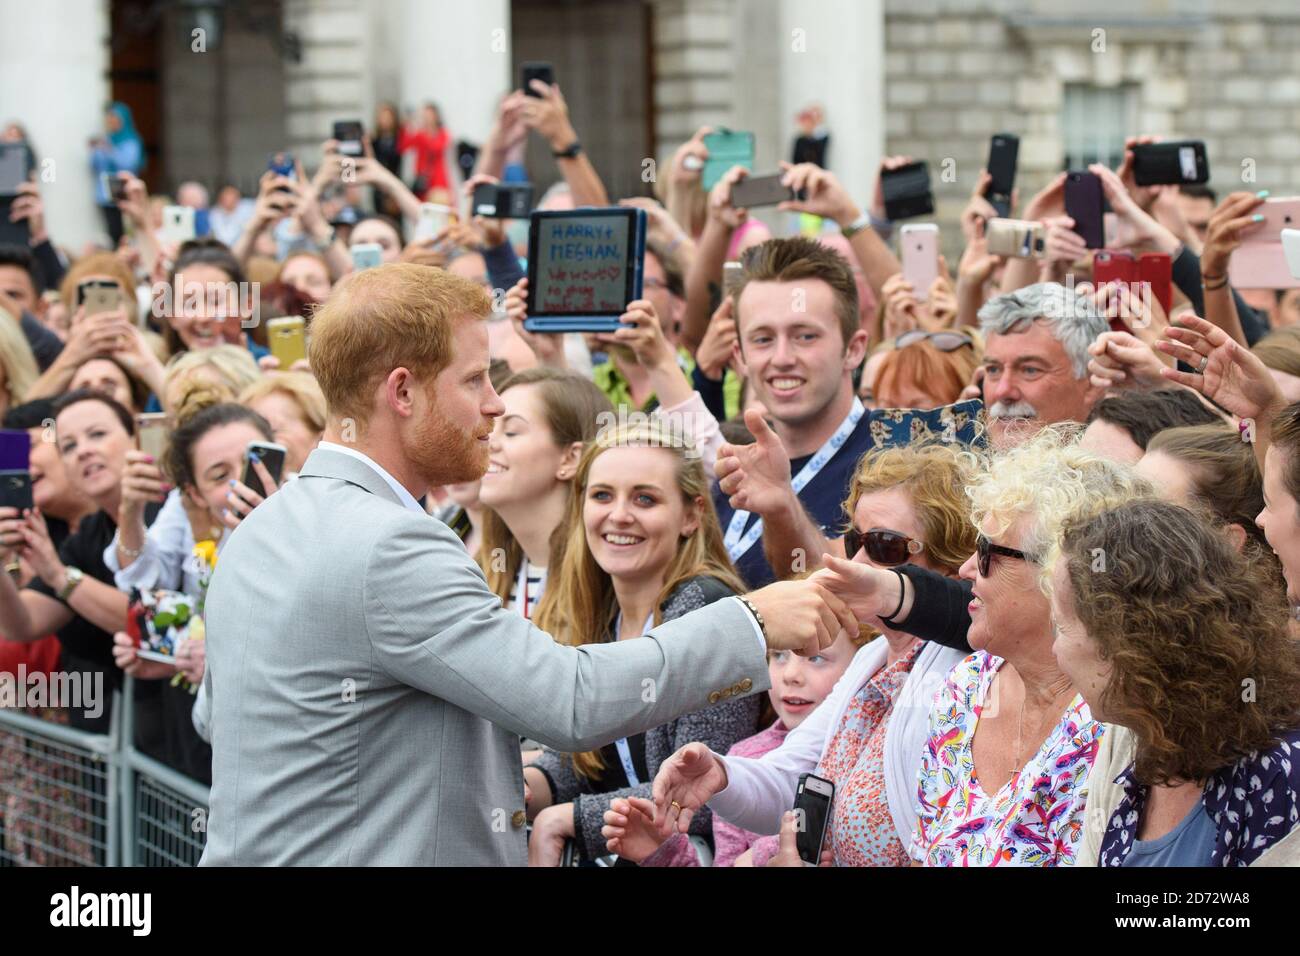 Il principe Harry, il duca del Sussex, saluta bene i wishers durante una passeggiata nel Trinity College, il secondo giorno della visita reale a Dublino, Irlanda. Data immagine: Mercoledì 11 luglio 2018. Il credito fotografico dovrebbe essere: Matt Crossick/ EMPICS Entertainment. Foto Stock